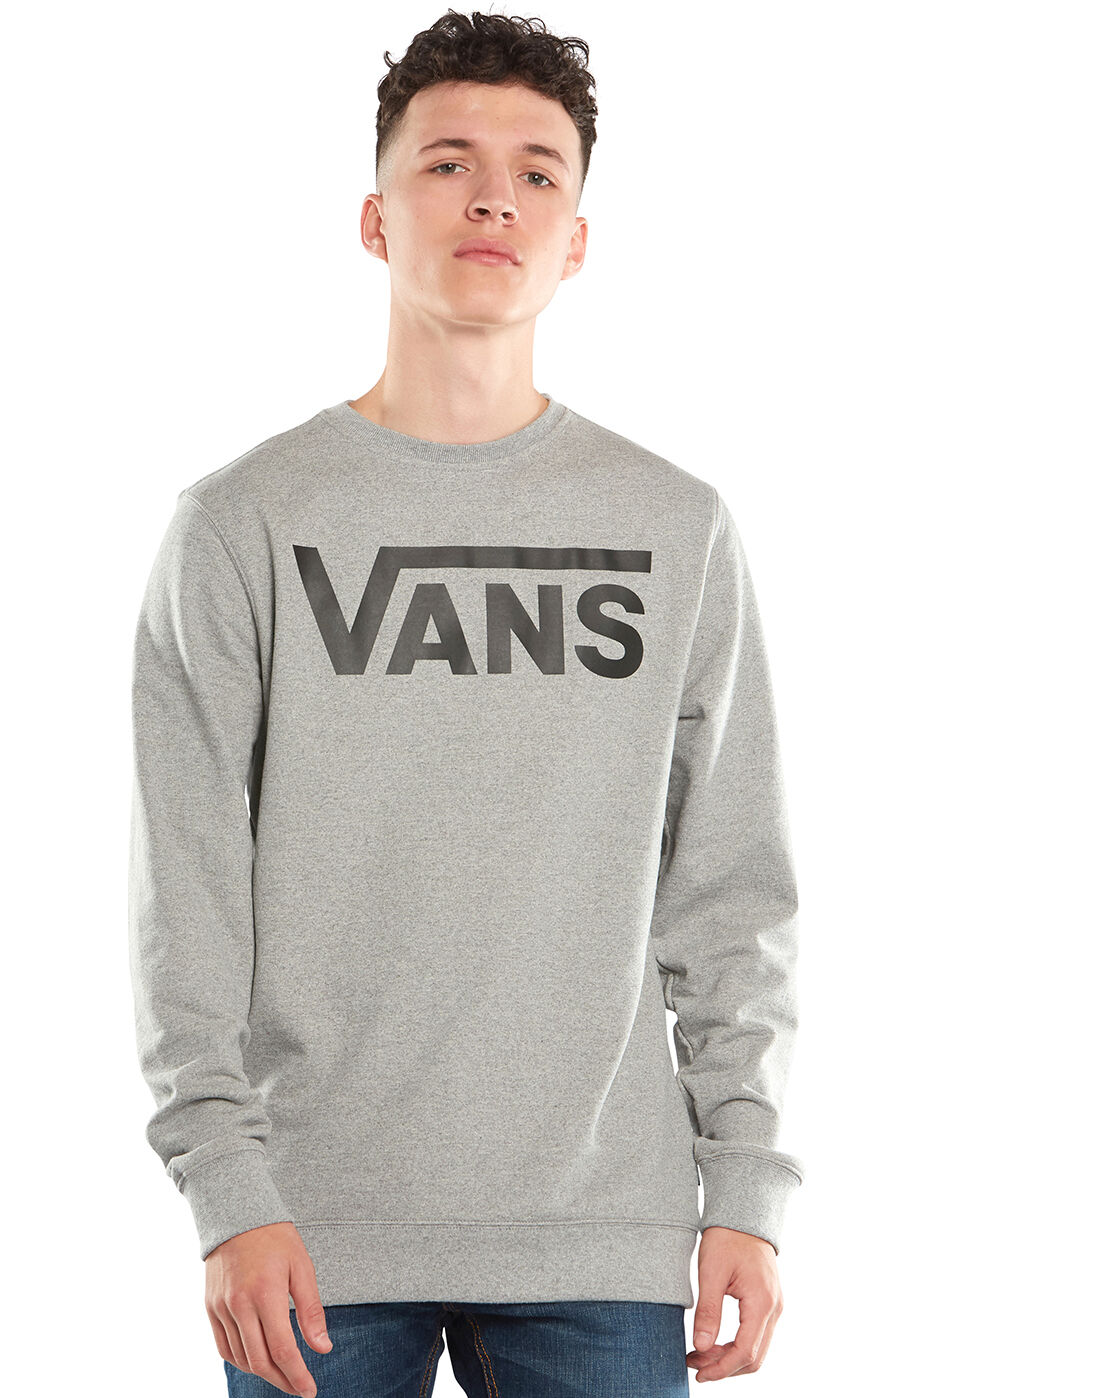 Vans Mens Crew Neck Sweatshirt - Grey 